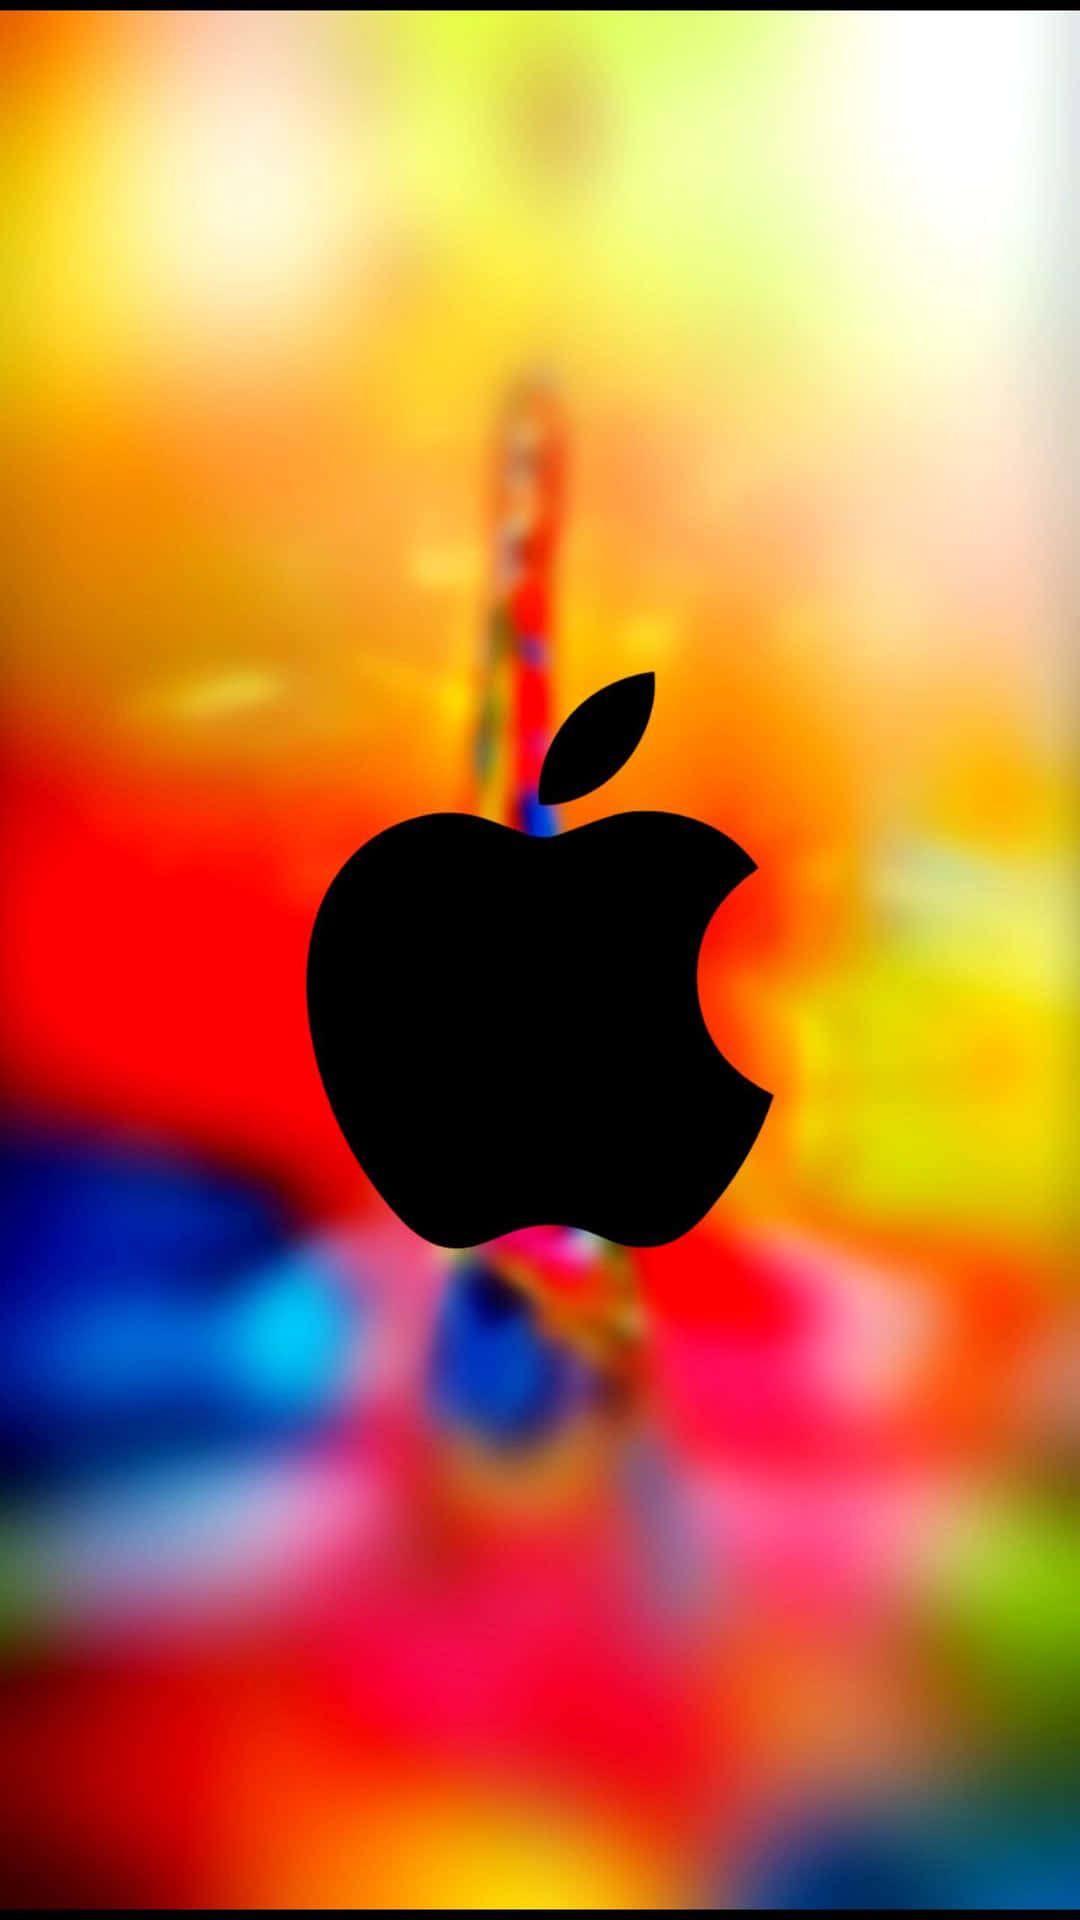 Buntesschwarzes Logo, Beeindruckendes Apple Hd Iphone Wallpaper